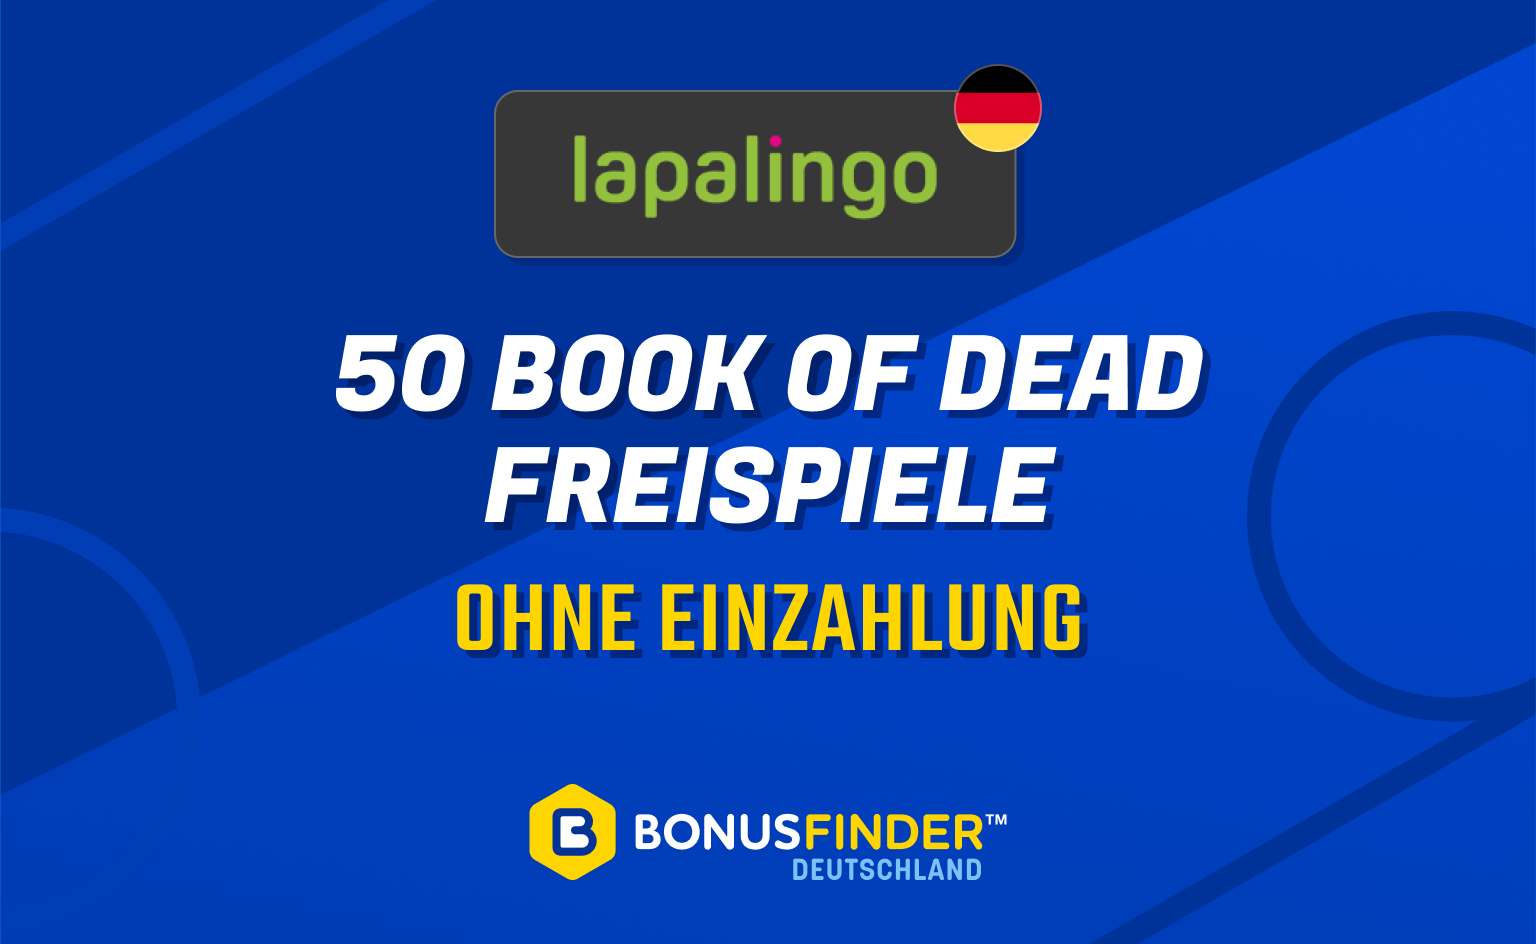 50 book of dead freispiele lapalingo